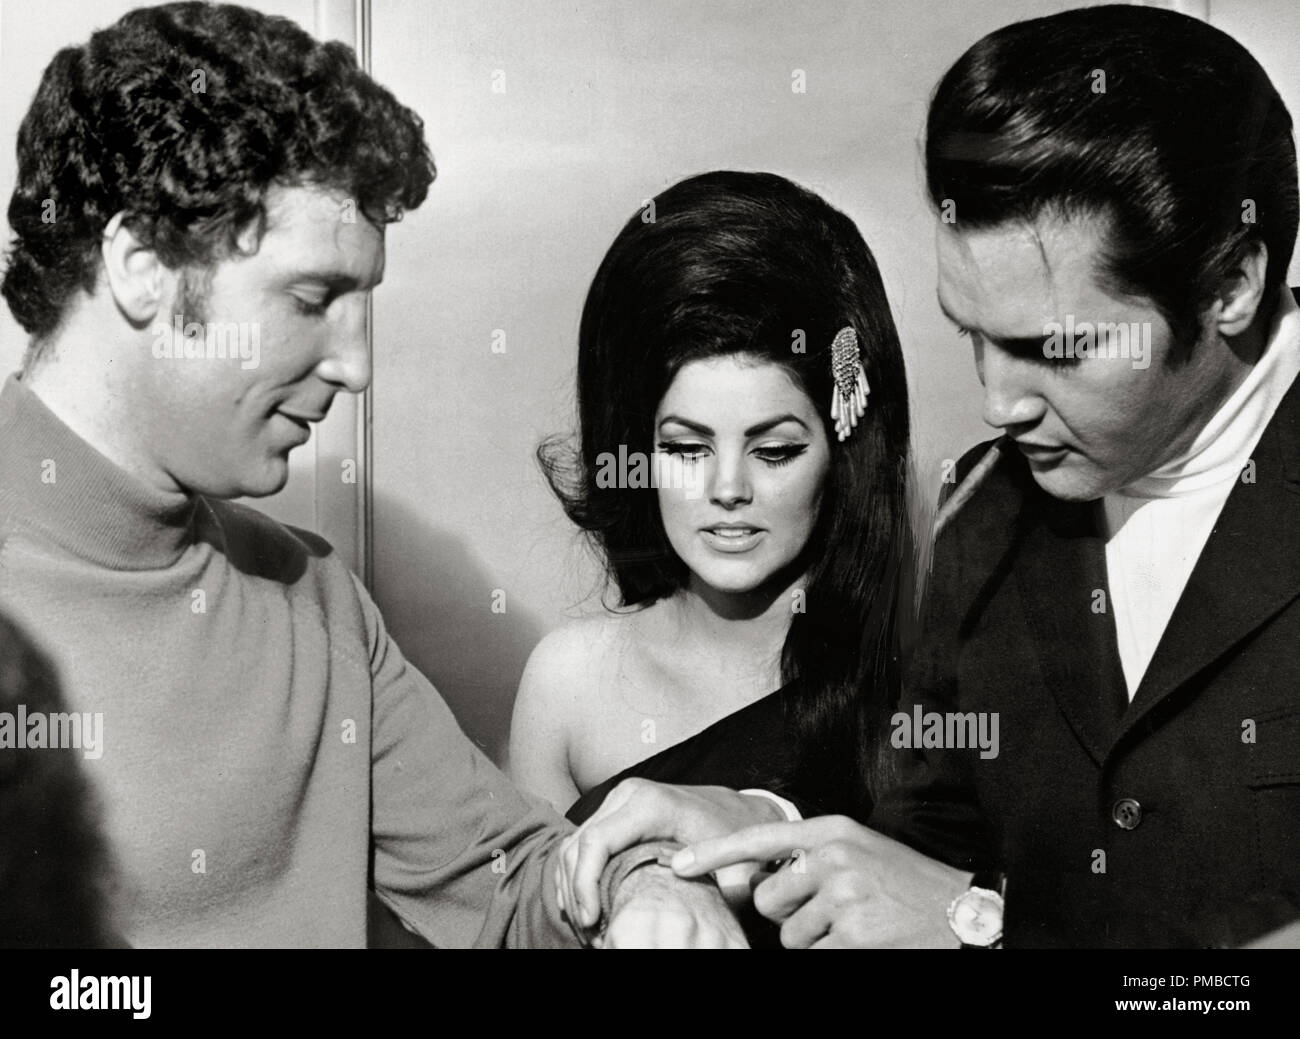 Elvis Presley avec son épouse Priscilla Presley et le chanteur Tom Jones, 1967 Référence #  32914 Fichier 844THA Banque D'Images